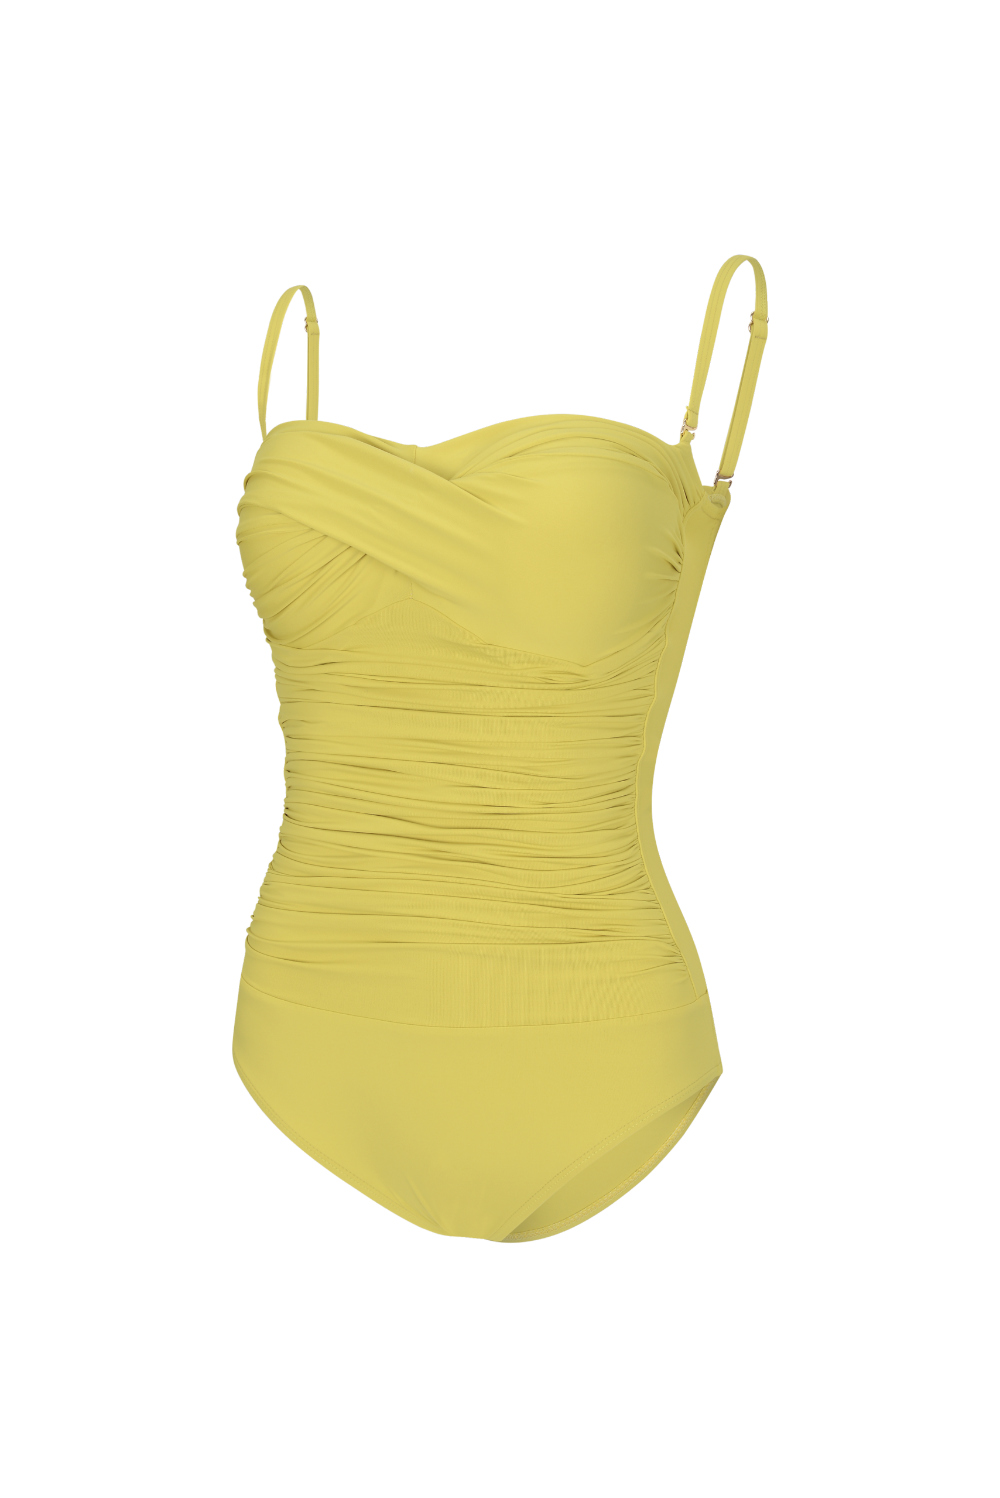 swim wear/inner wear yellow color image-S2L4